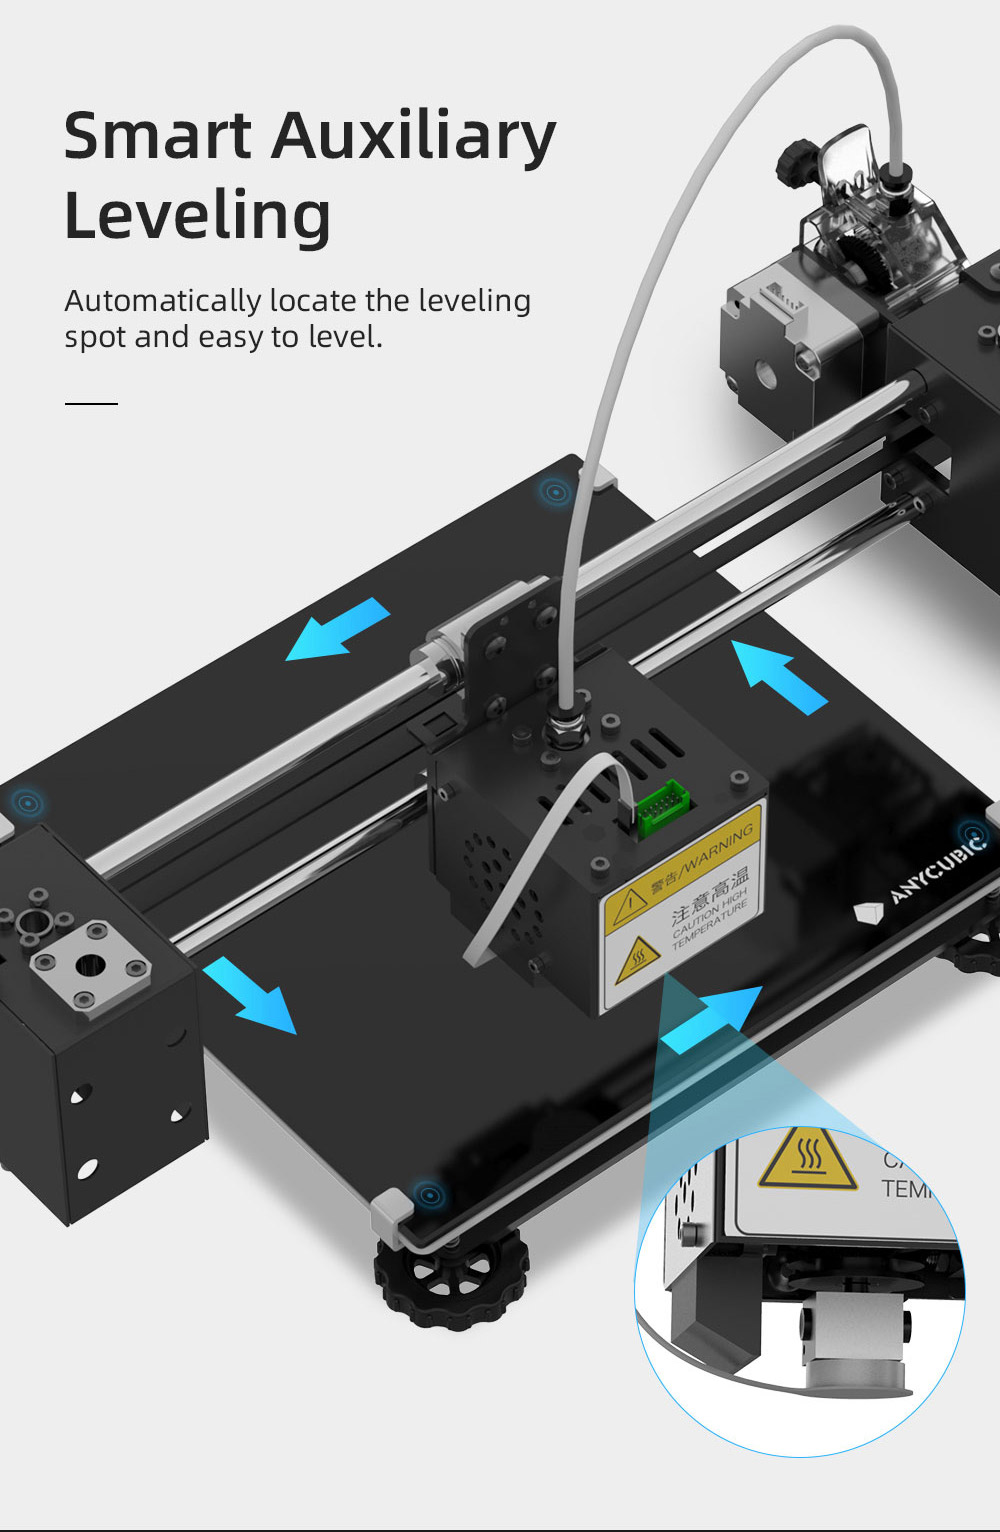 Impresora Anycubic Mega Pro 3D 2 en 1 Impresión 3D y grabado láser Extrusora de doble engranaje de nivelación auxiliar inteligente 210x210x205 mm